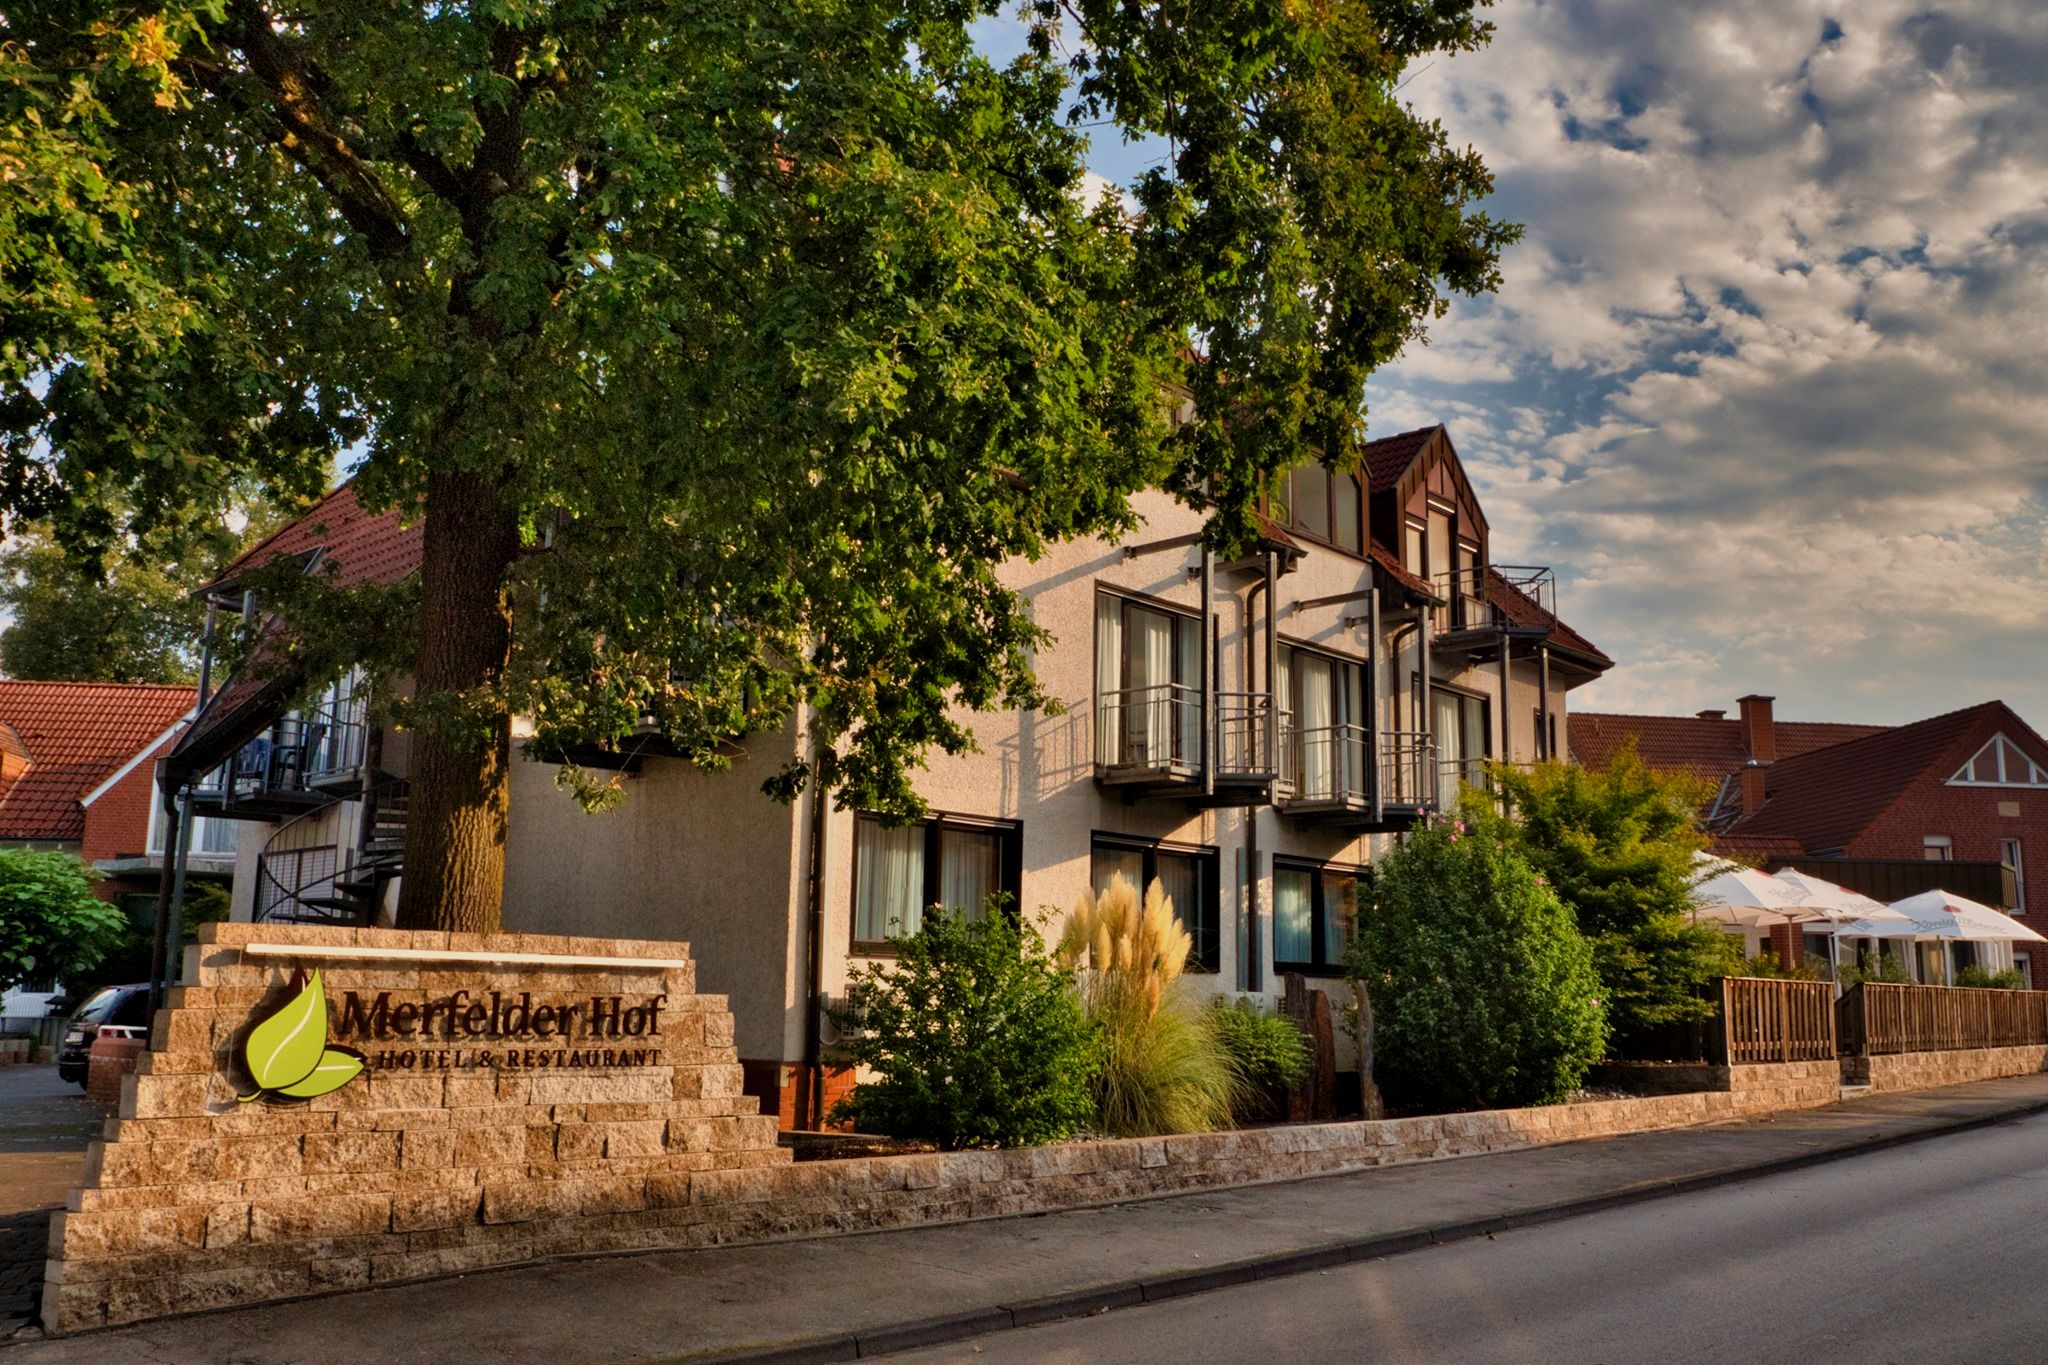 Merfelder Hof Hotel und Restaurant